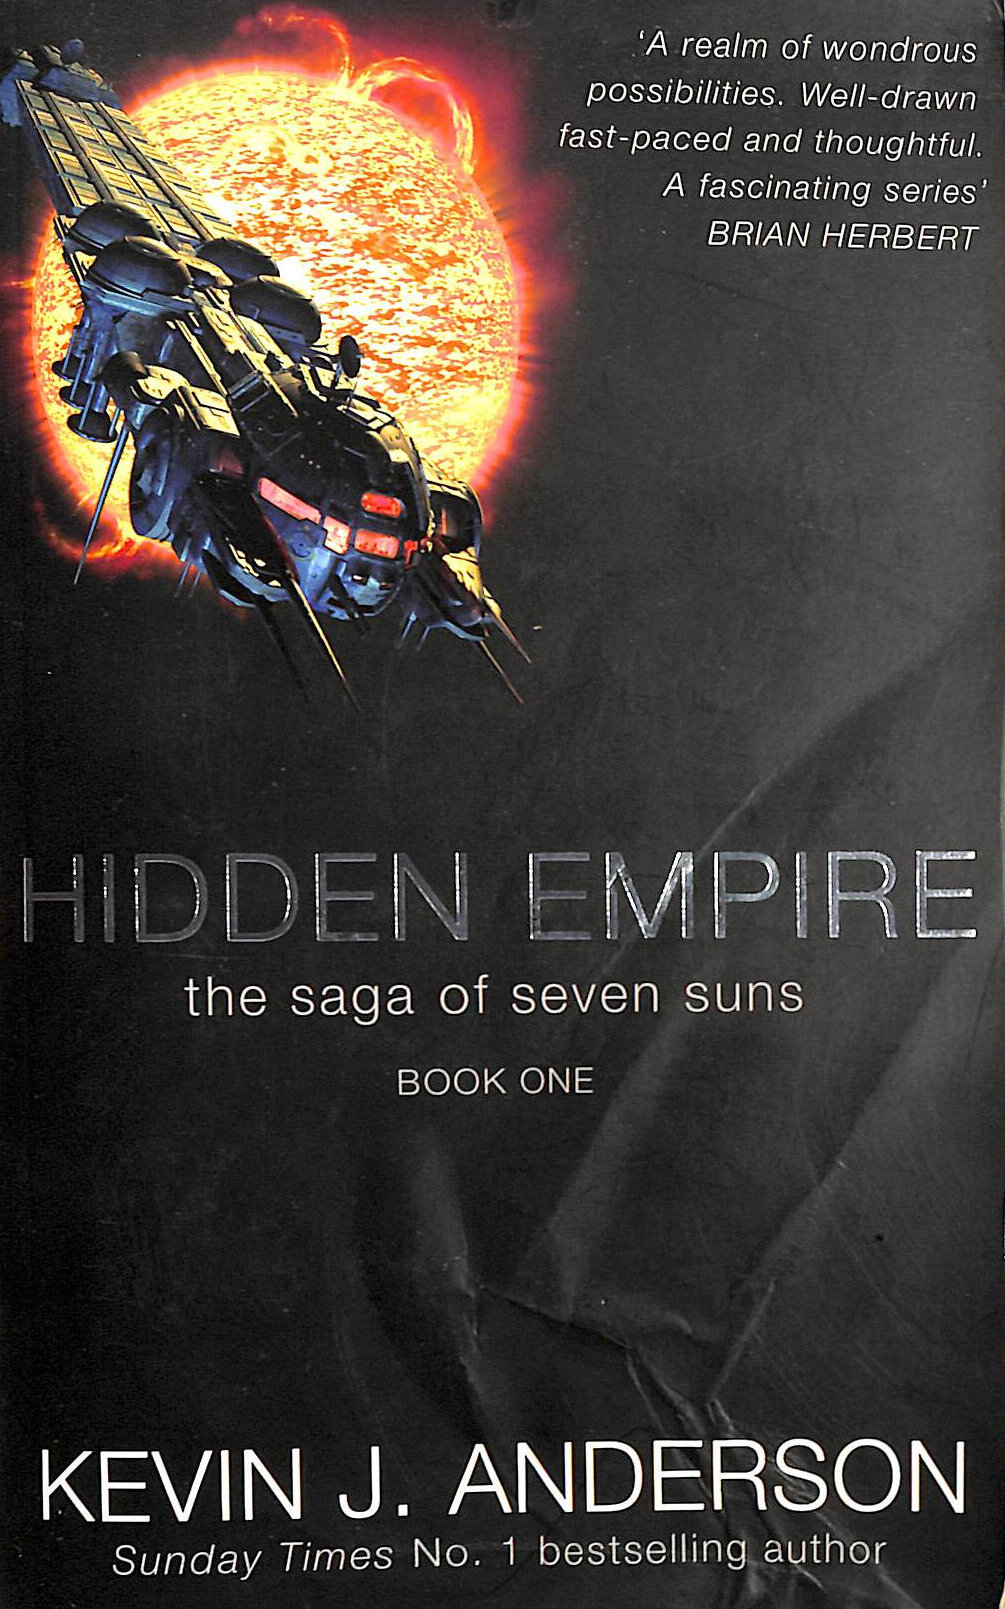 ANDERSON, KEVIN J. - Hidden Empire: Bk.1 (Saga of Seven Suns)